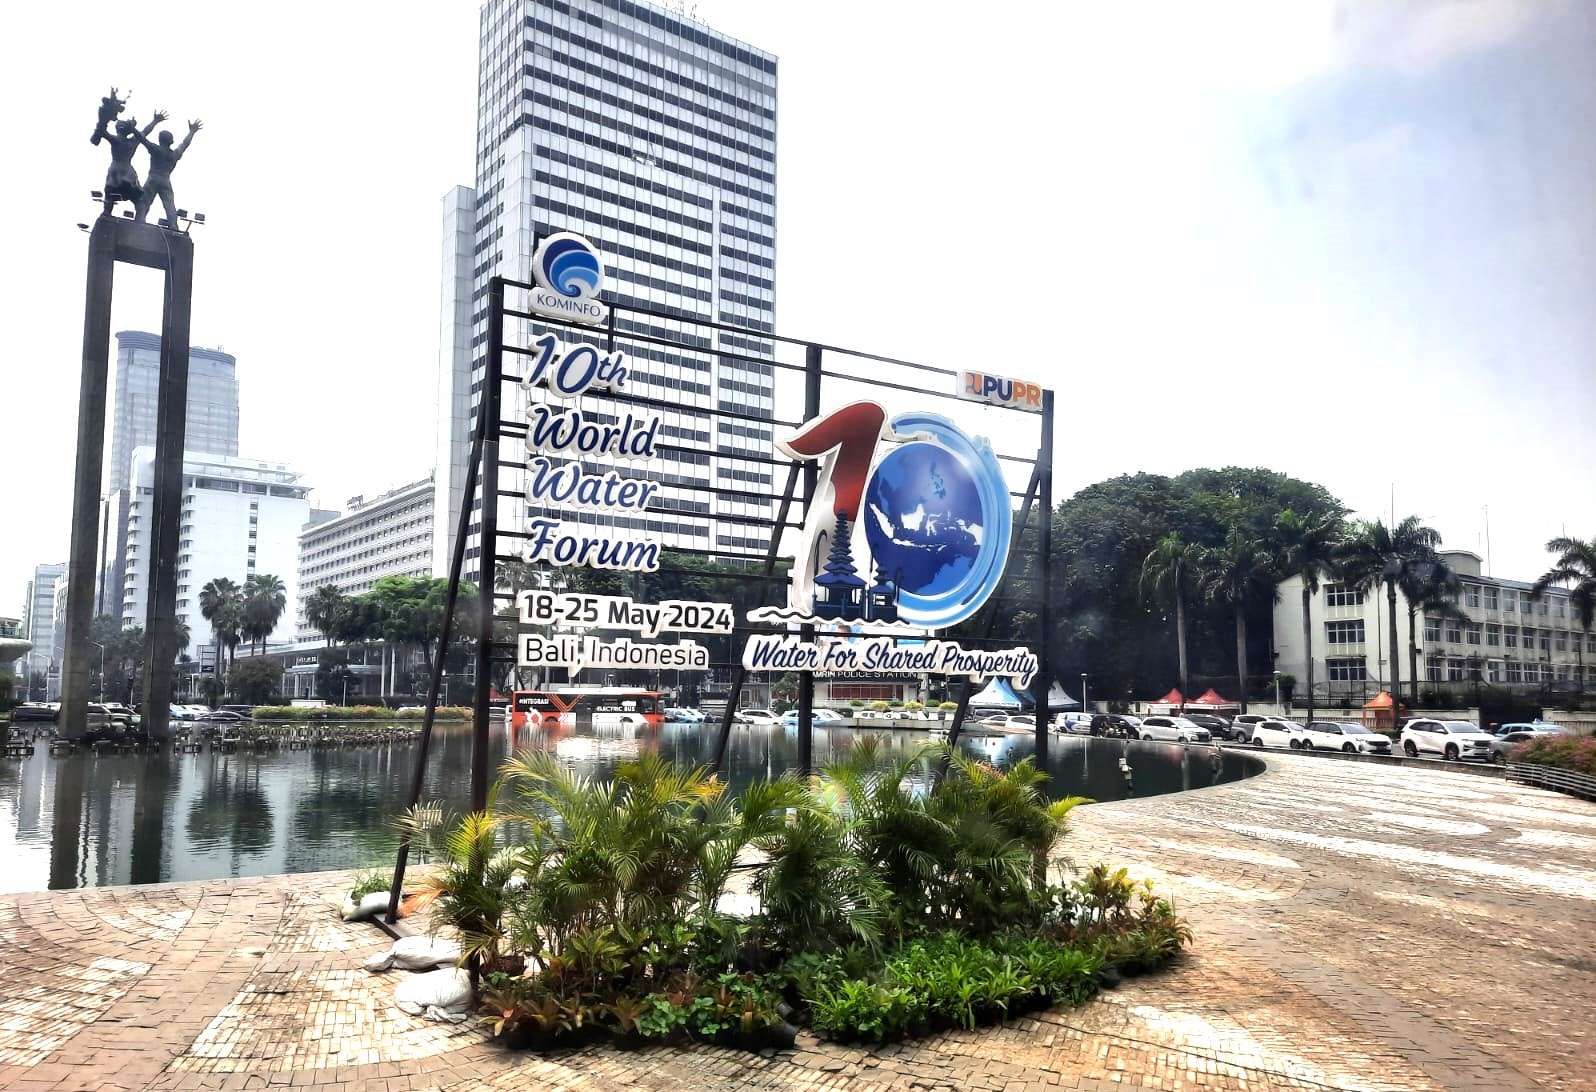 Logo World Water Forum ke-10 2024 di Bundaran HI, Jakarta. Indonesia menjadi tuan rumah World Water Forum ke-10 dengan tema Water For Shared Prosperty yang akan digelar pada 18-25 Mei 2024 di Bali (Foto: RRI/Retno Mandasari)